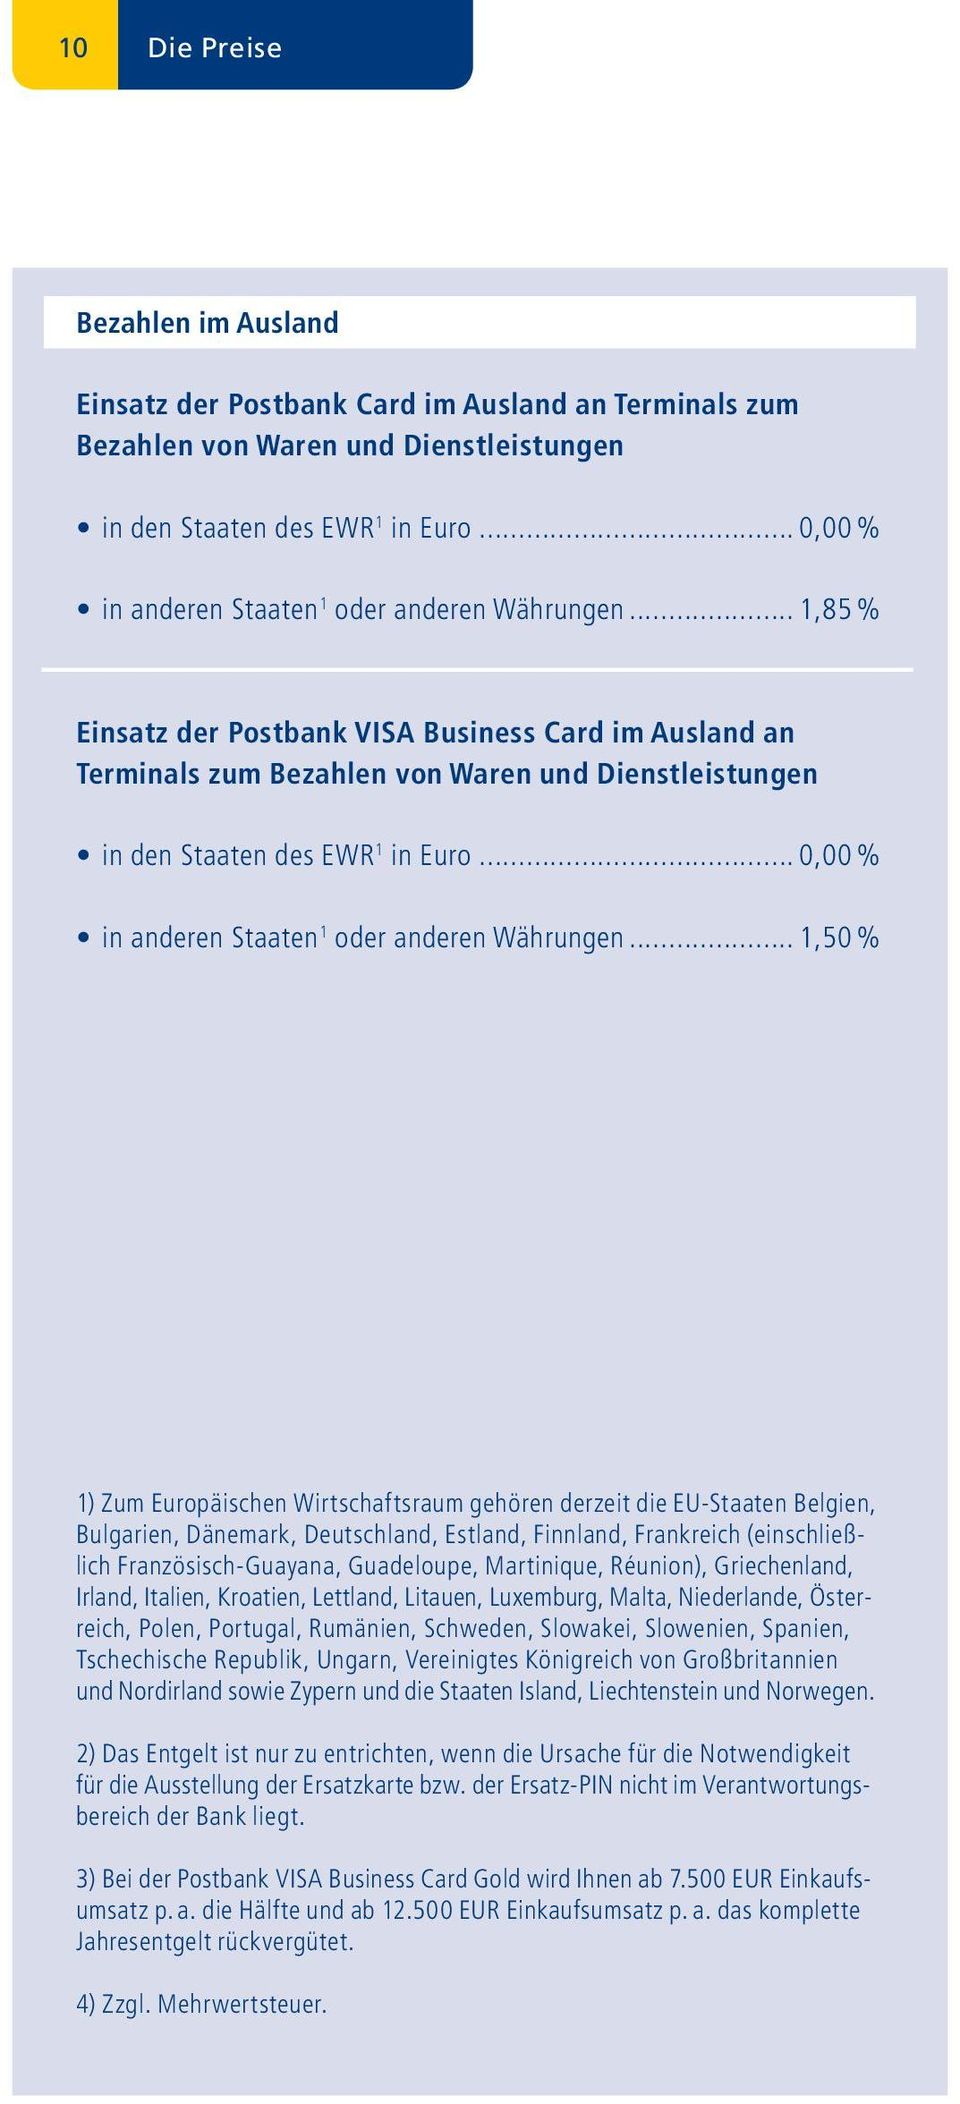 .. 1,85 % Einsatz der Postbank VISA Business Card im Ausland an Terminals zum Bezahlen von Waren und Dienstleistungen in den Staaten des EWR 1 in Euro.